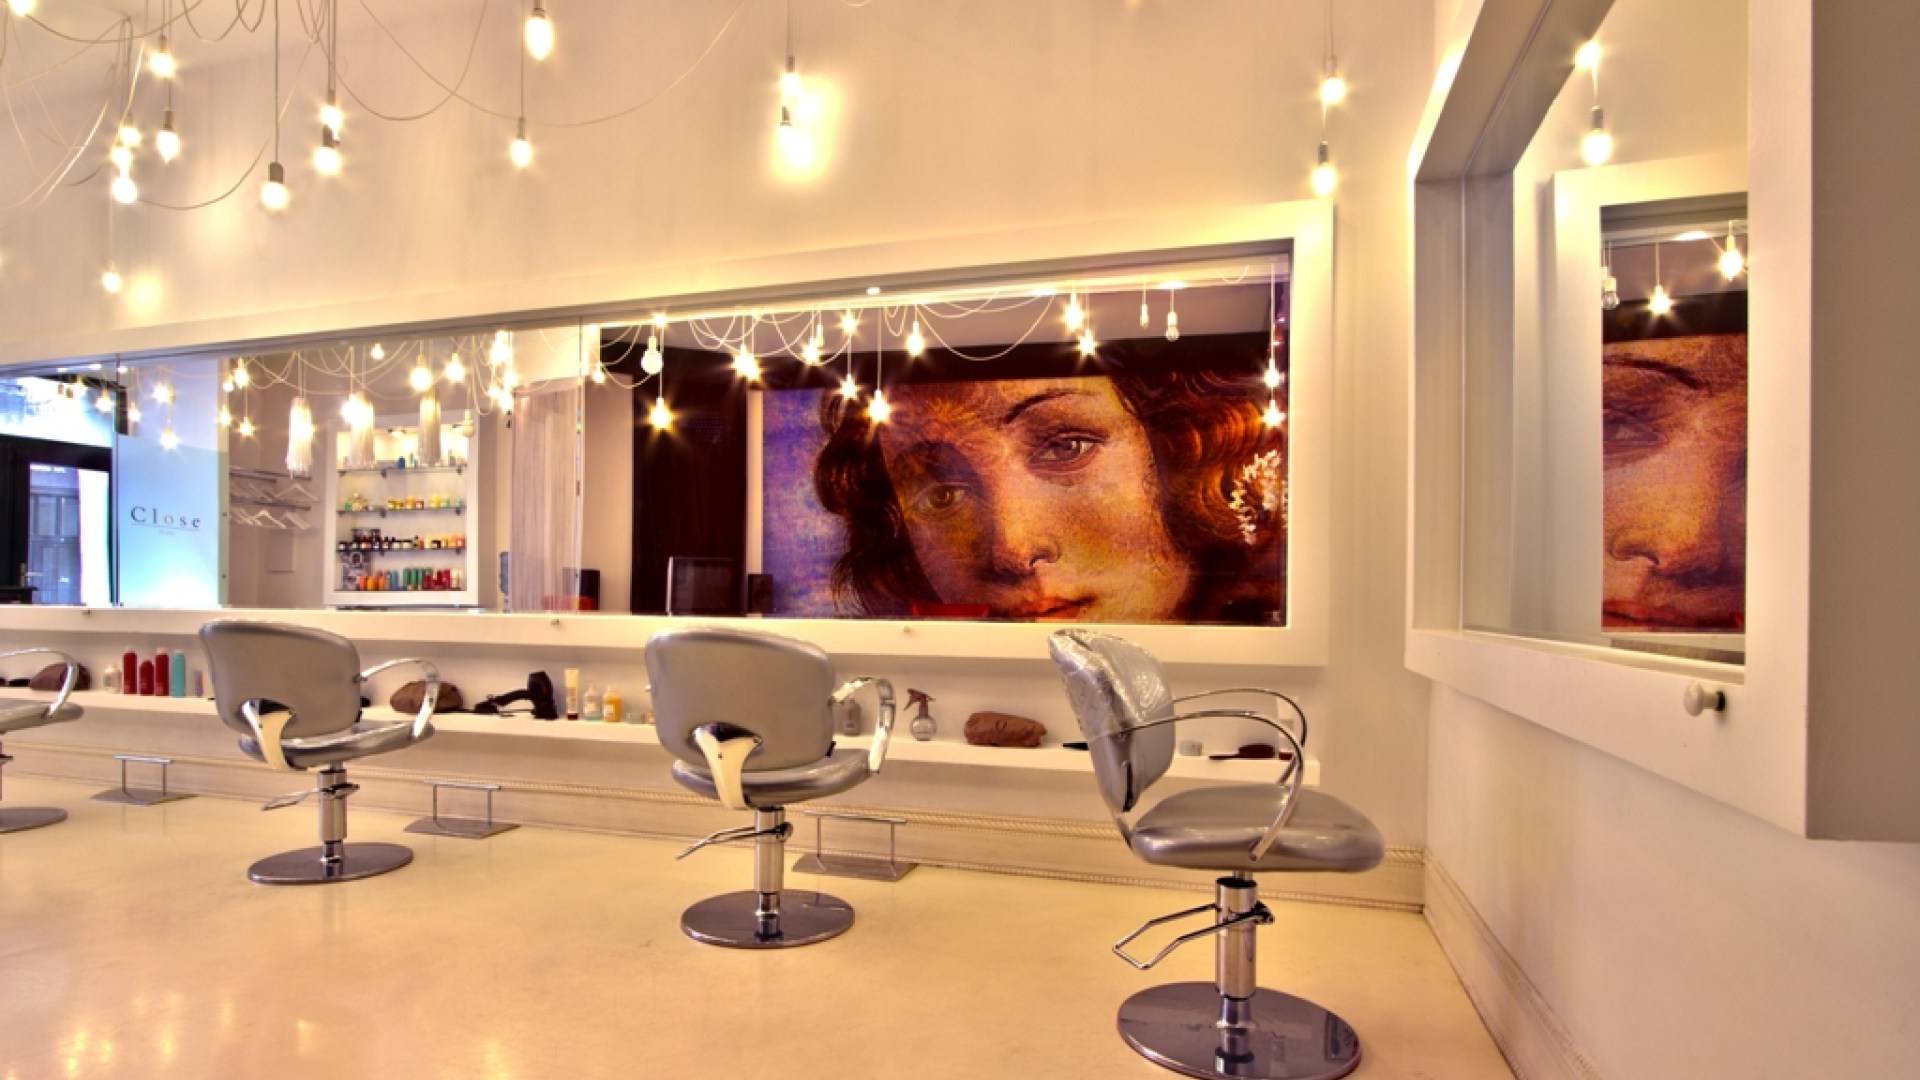 14 Moderno salon de belleza bien iluminado y decorado con el rostro de la Venus de Botticelli